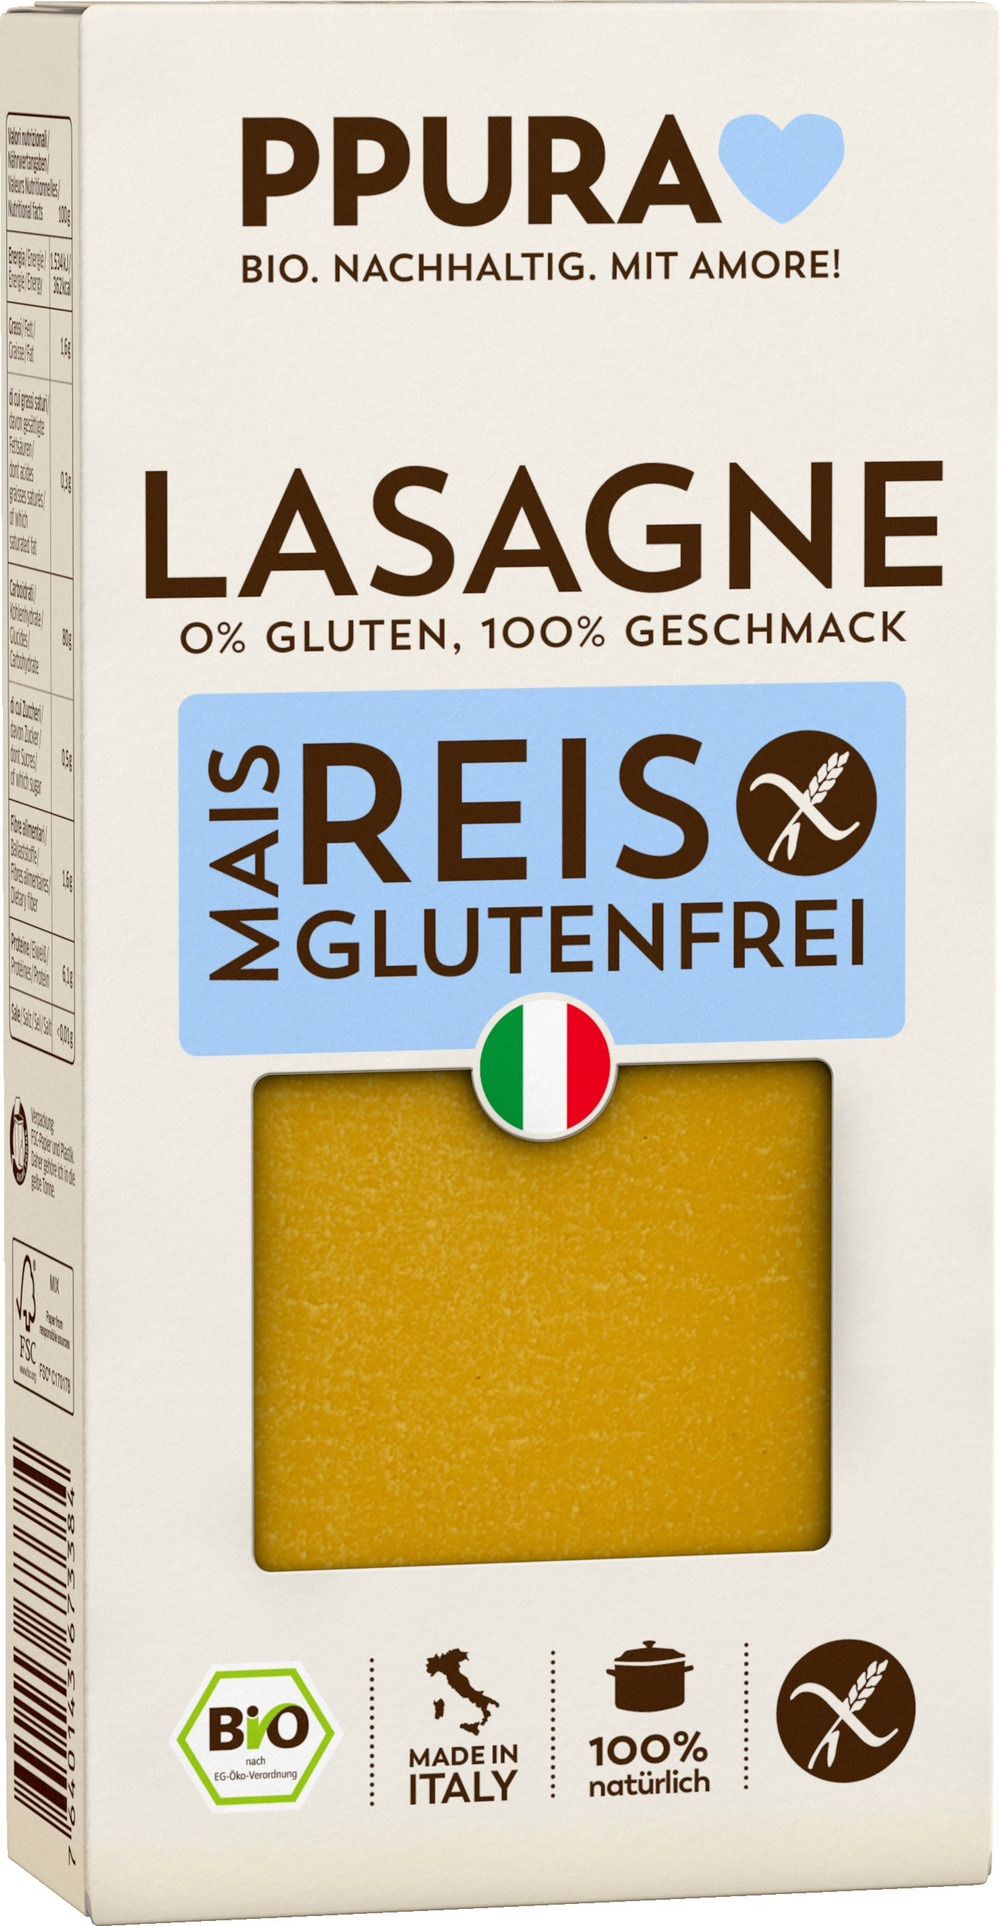 Lasagneplatten, glutenfrei, 250g